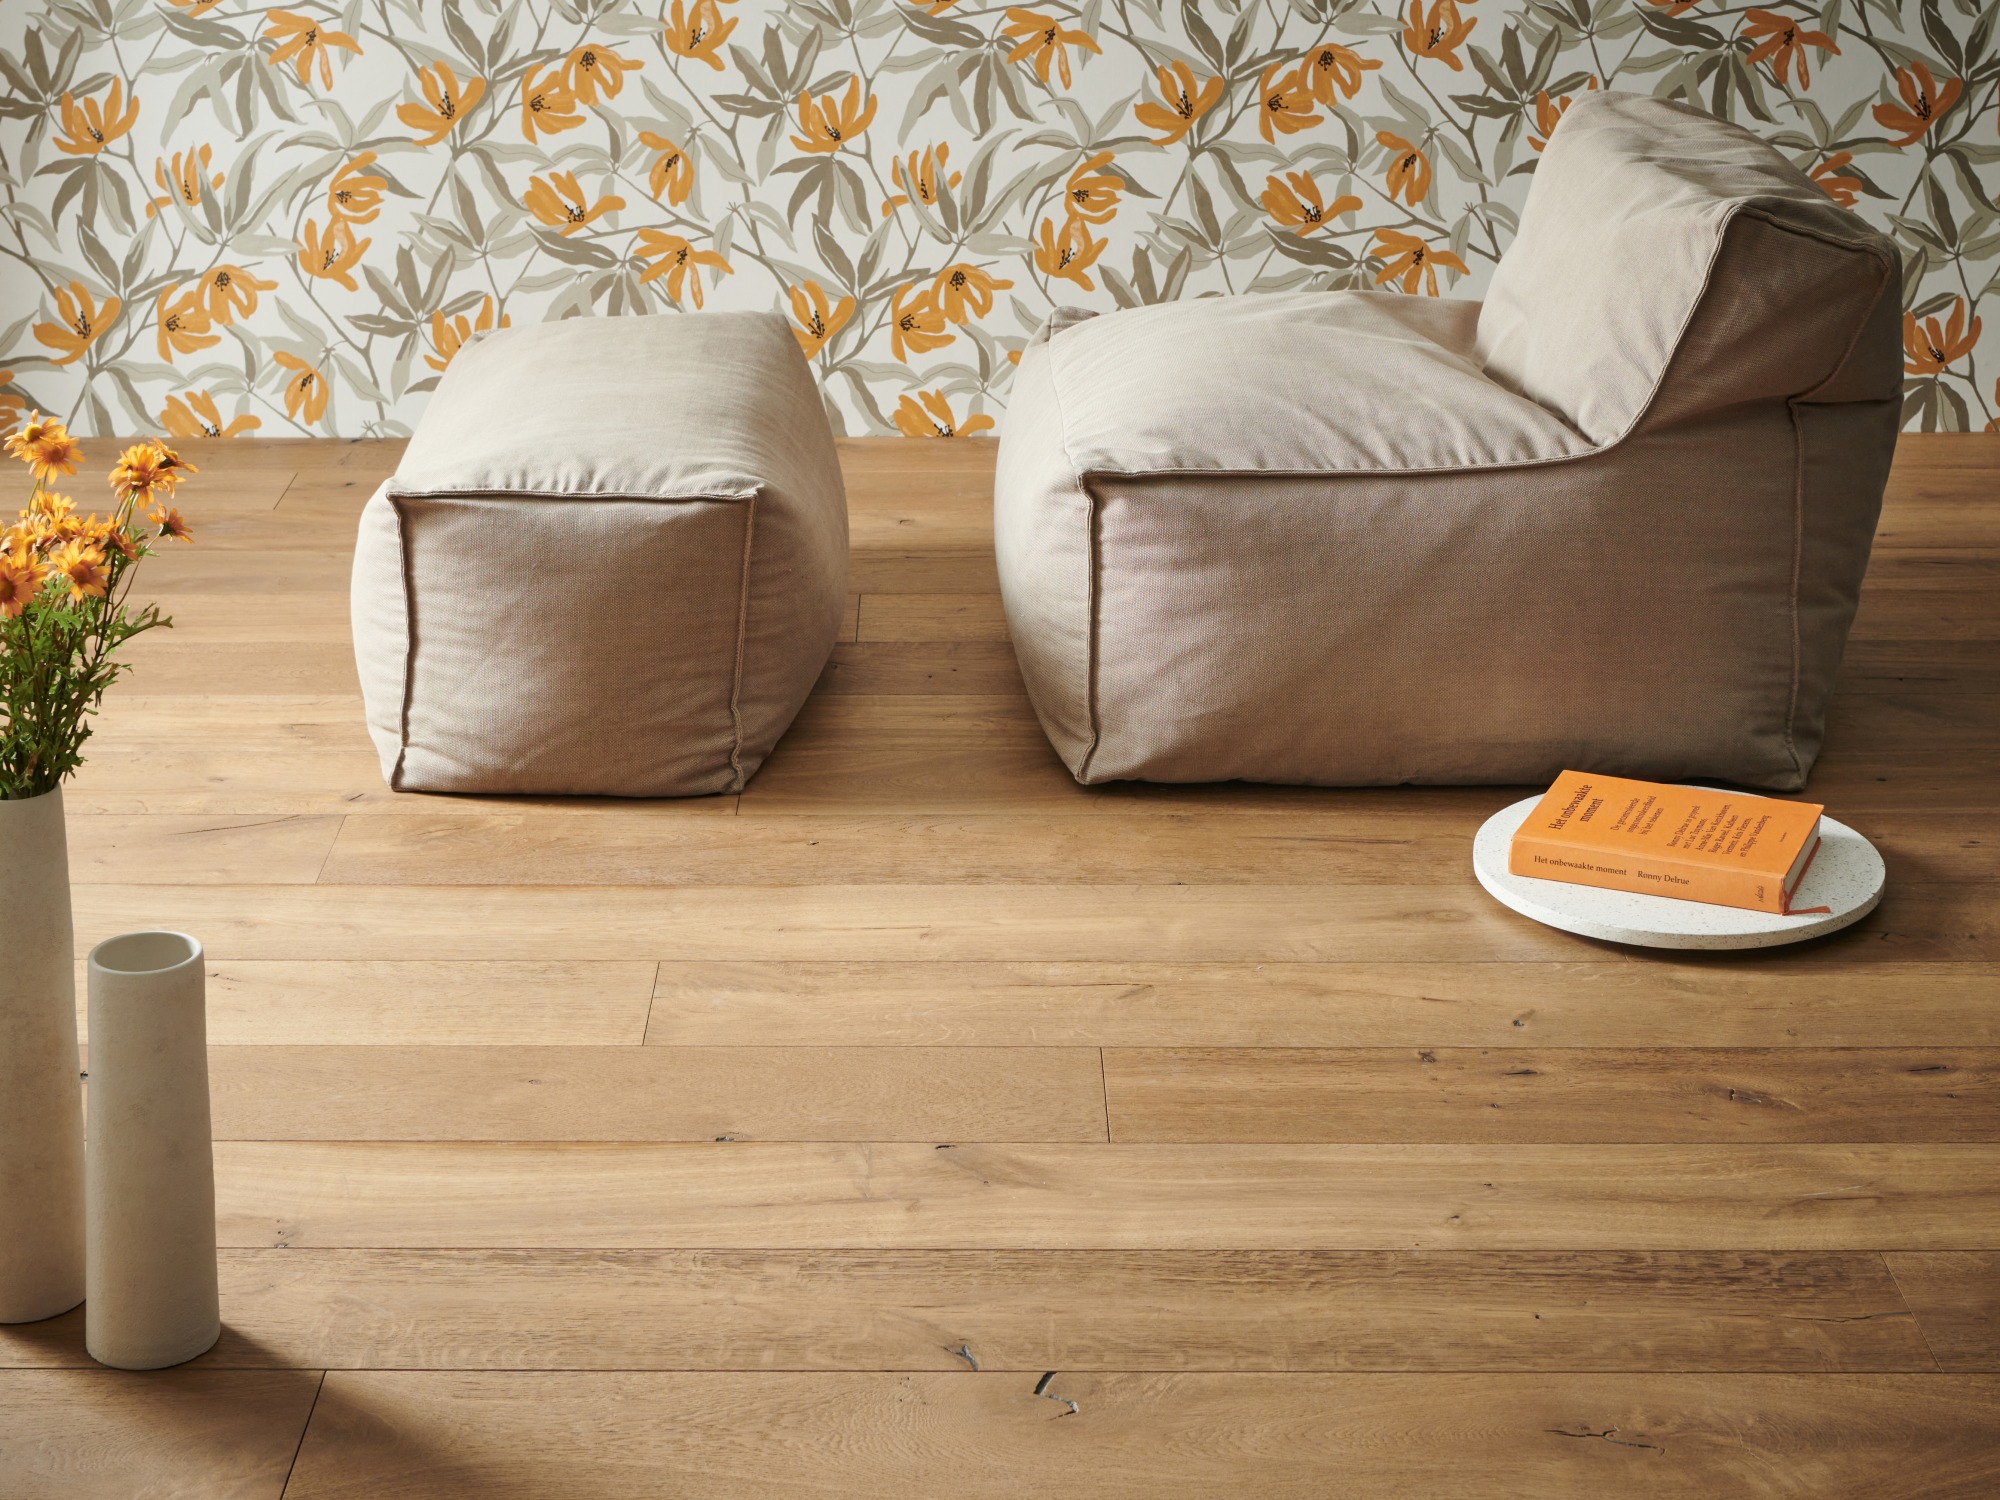 Engineered oak wood flooring named Albion Biscuit